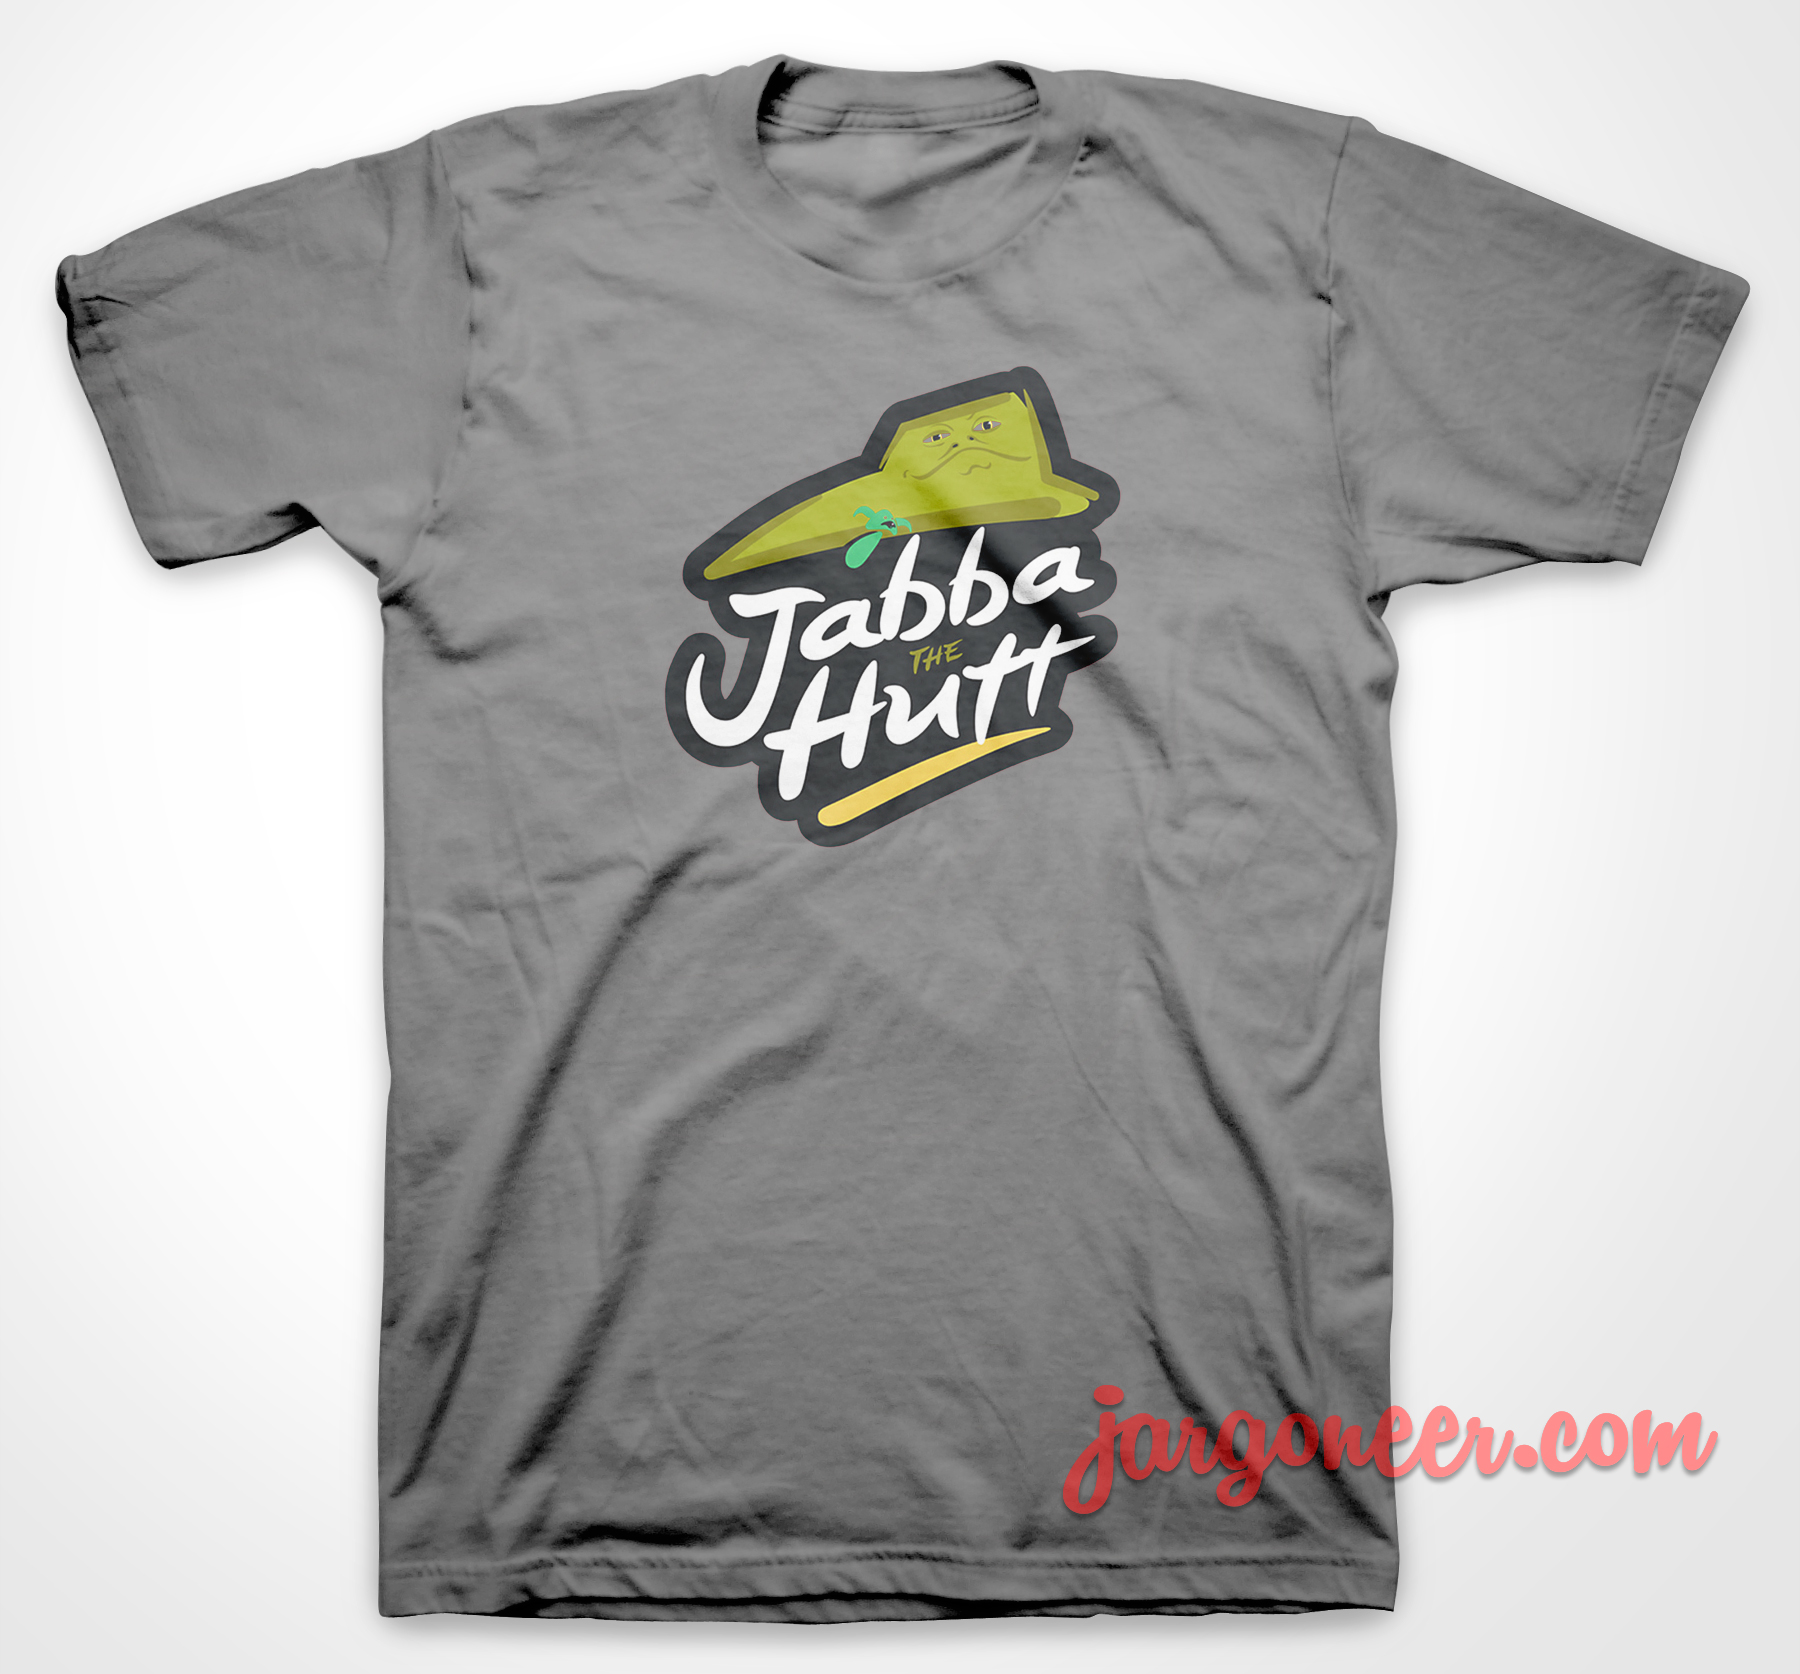 Jabba Hut - Shop Unique Graphic Cool Shirt Designs